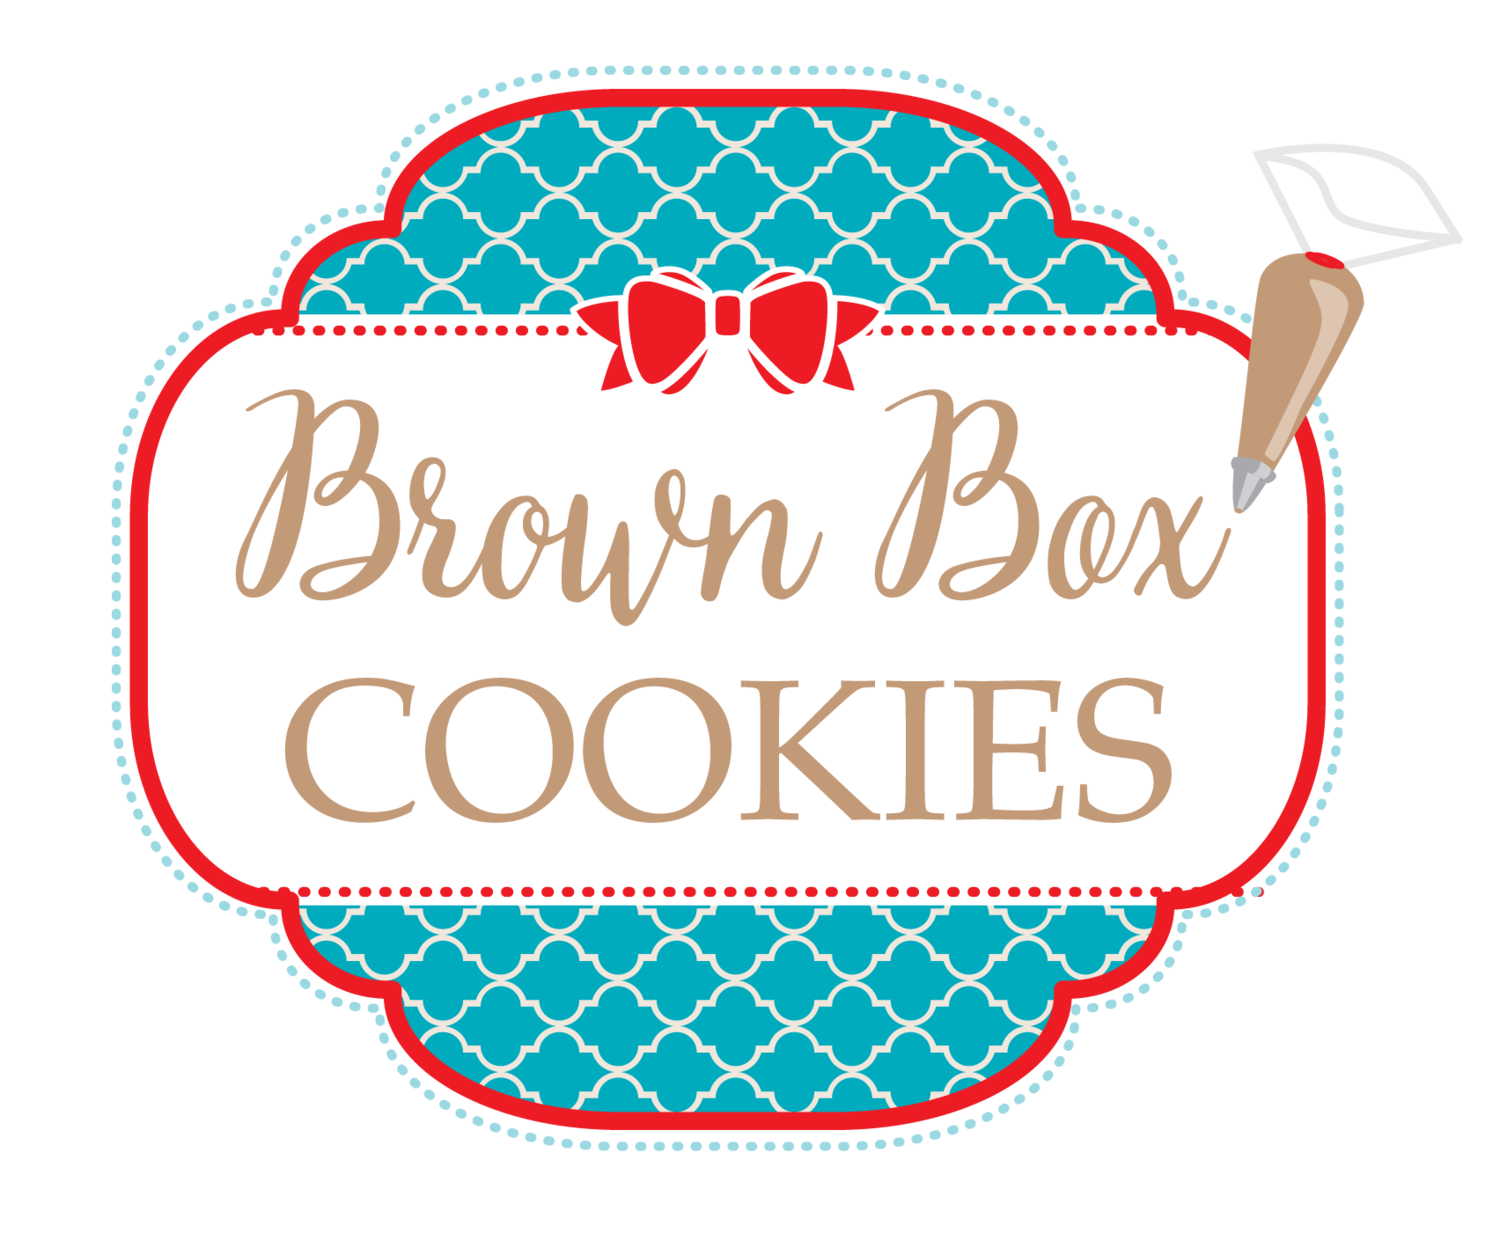 Brown Box Cookies